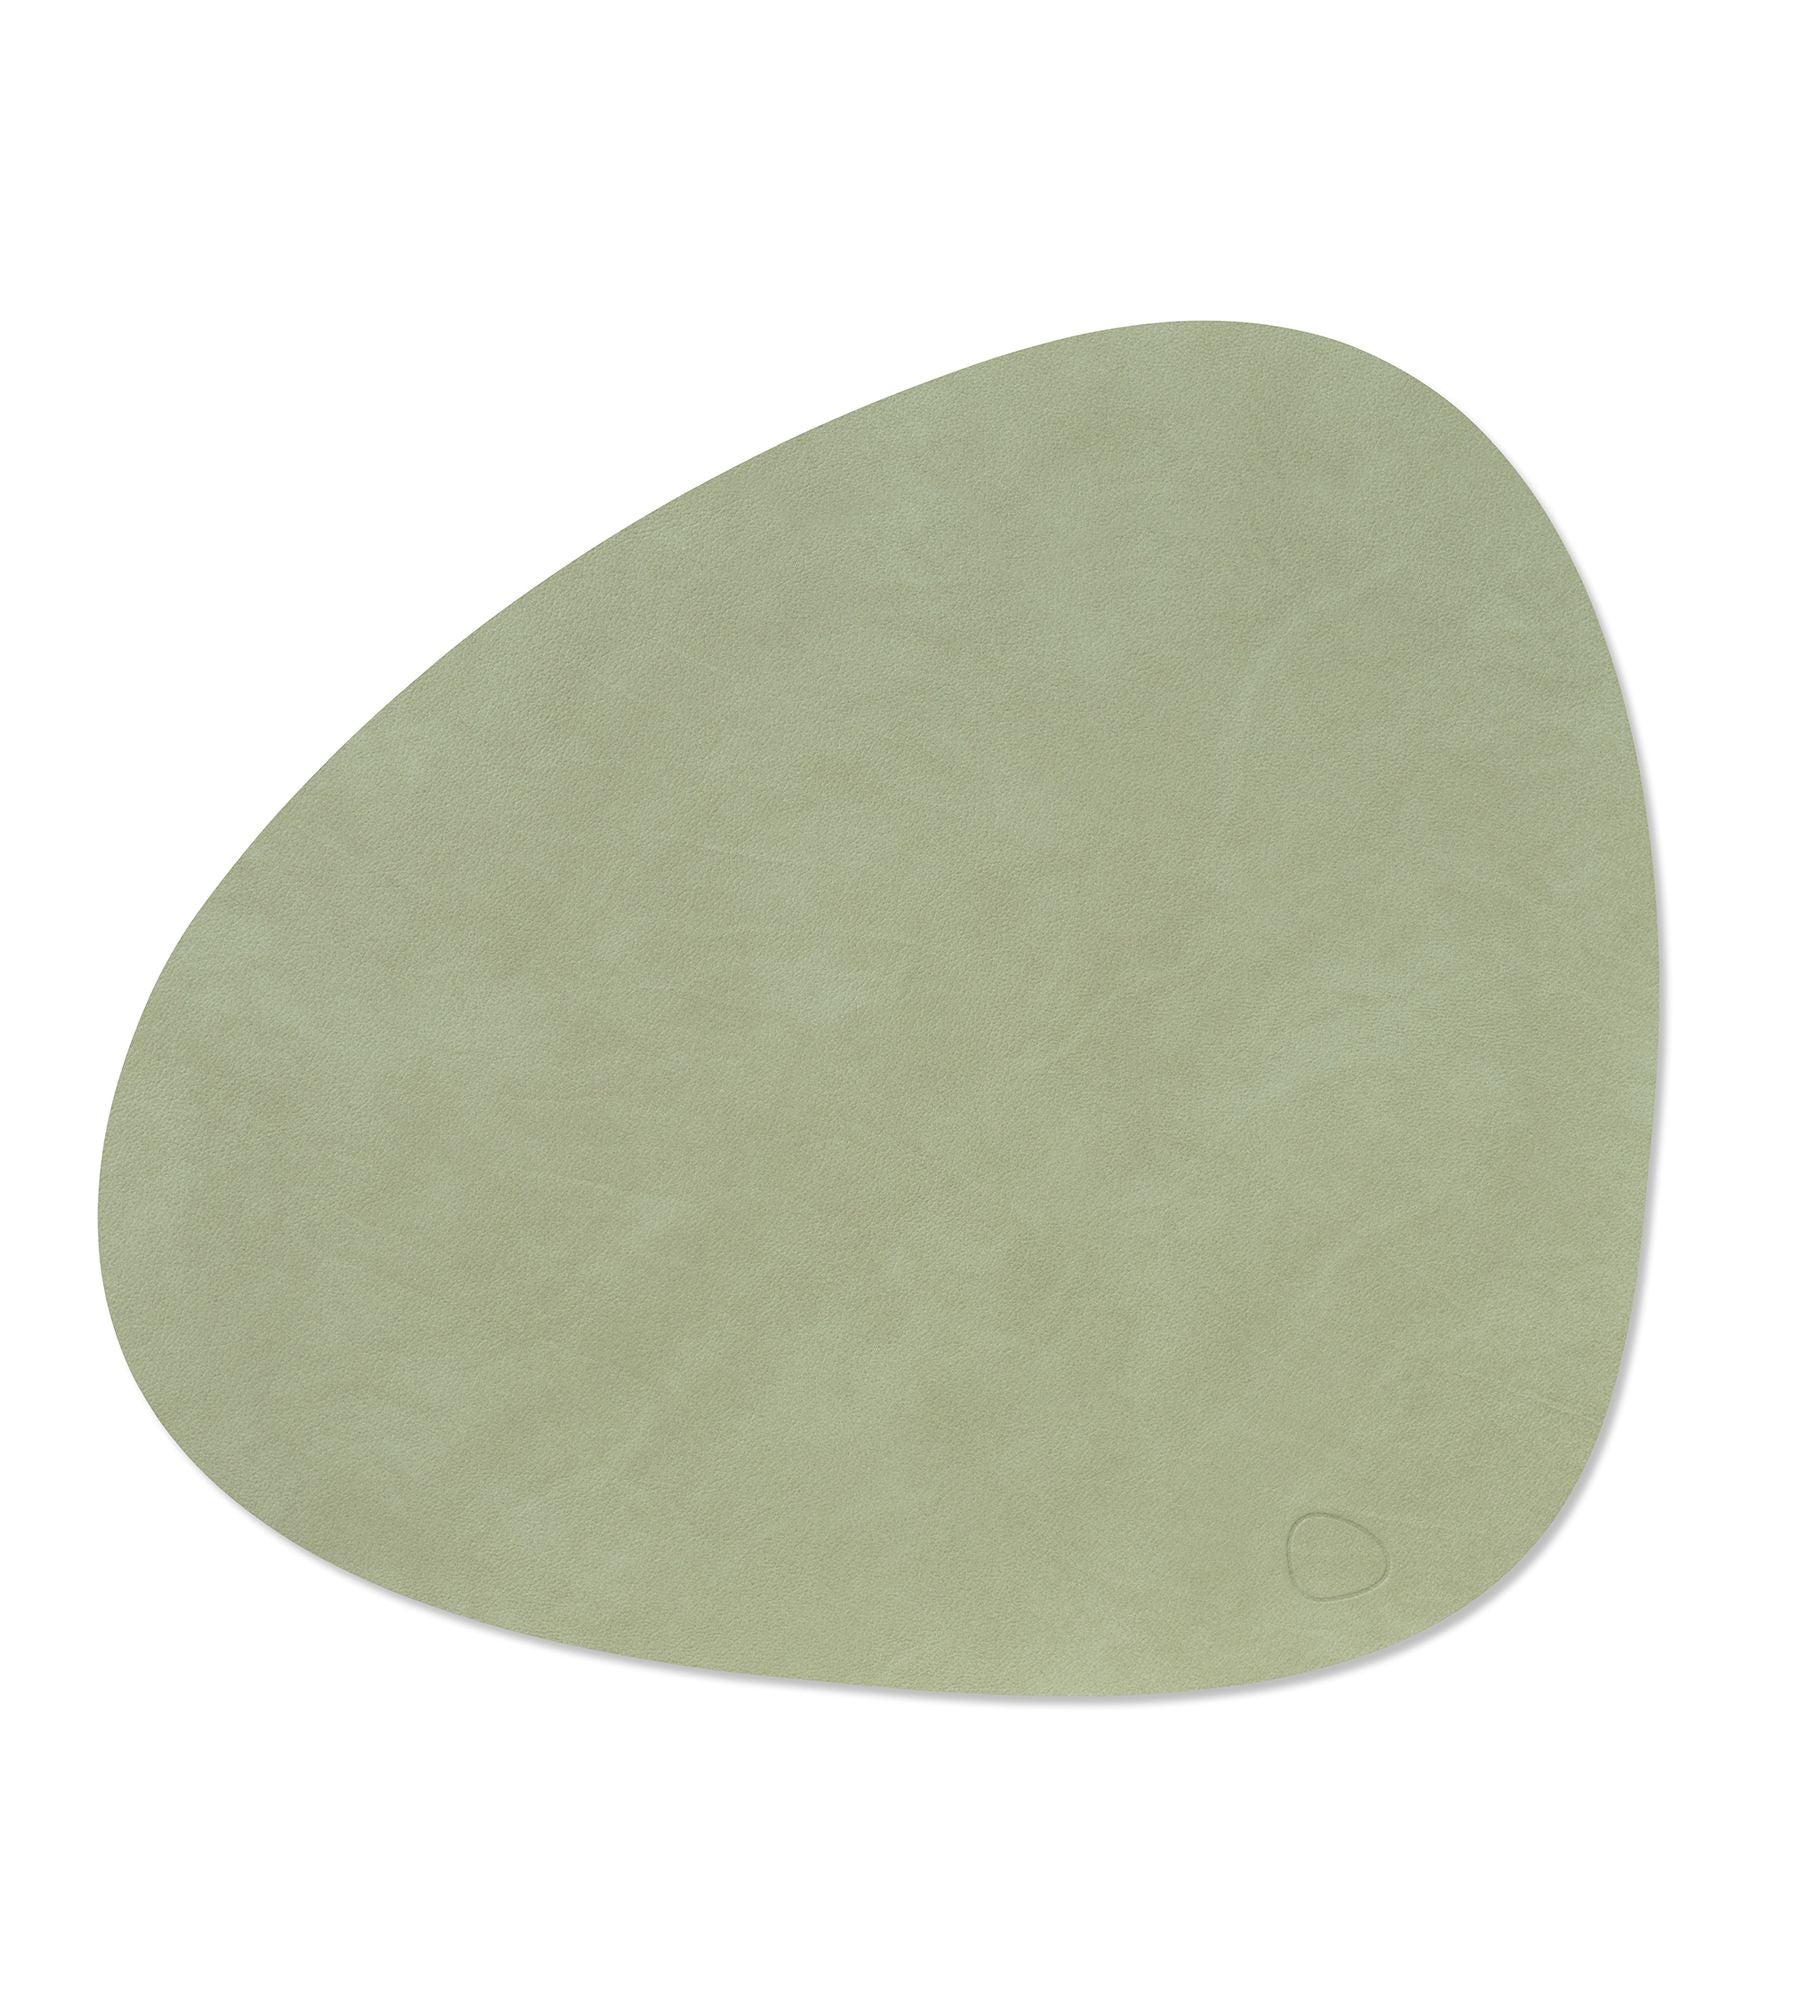 LindDNA Tischset Leather Nupo olive green Curve L 37 x 44 cm